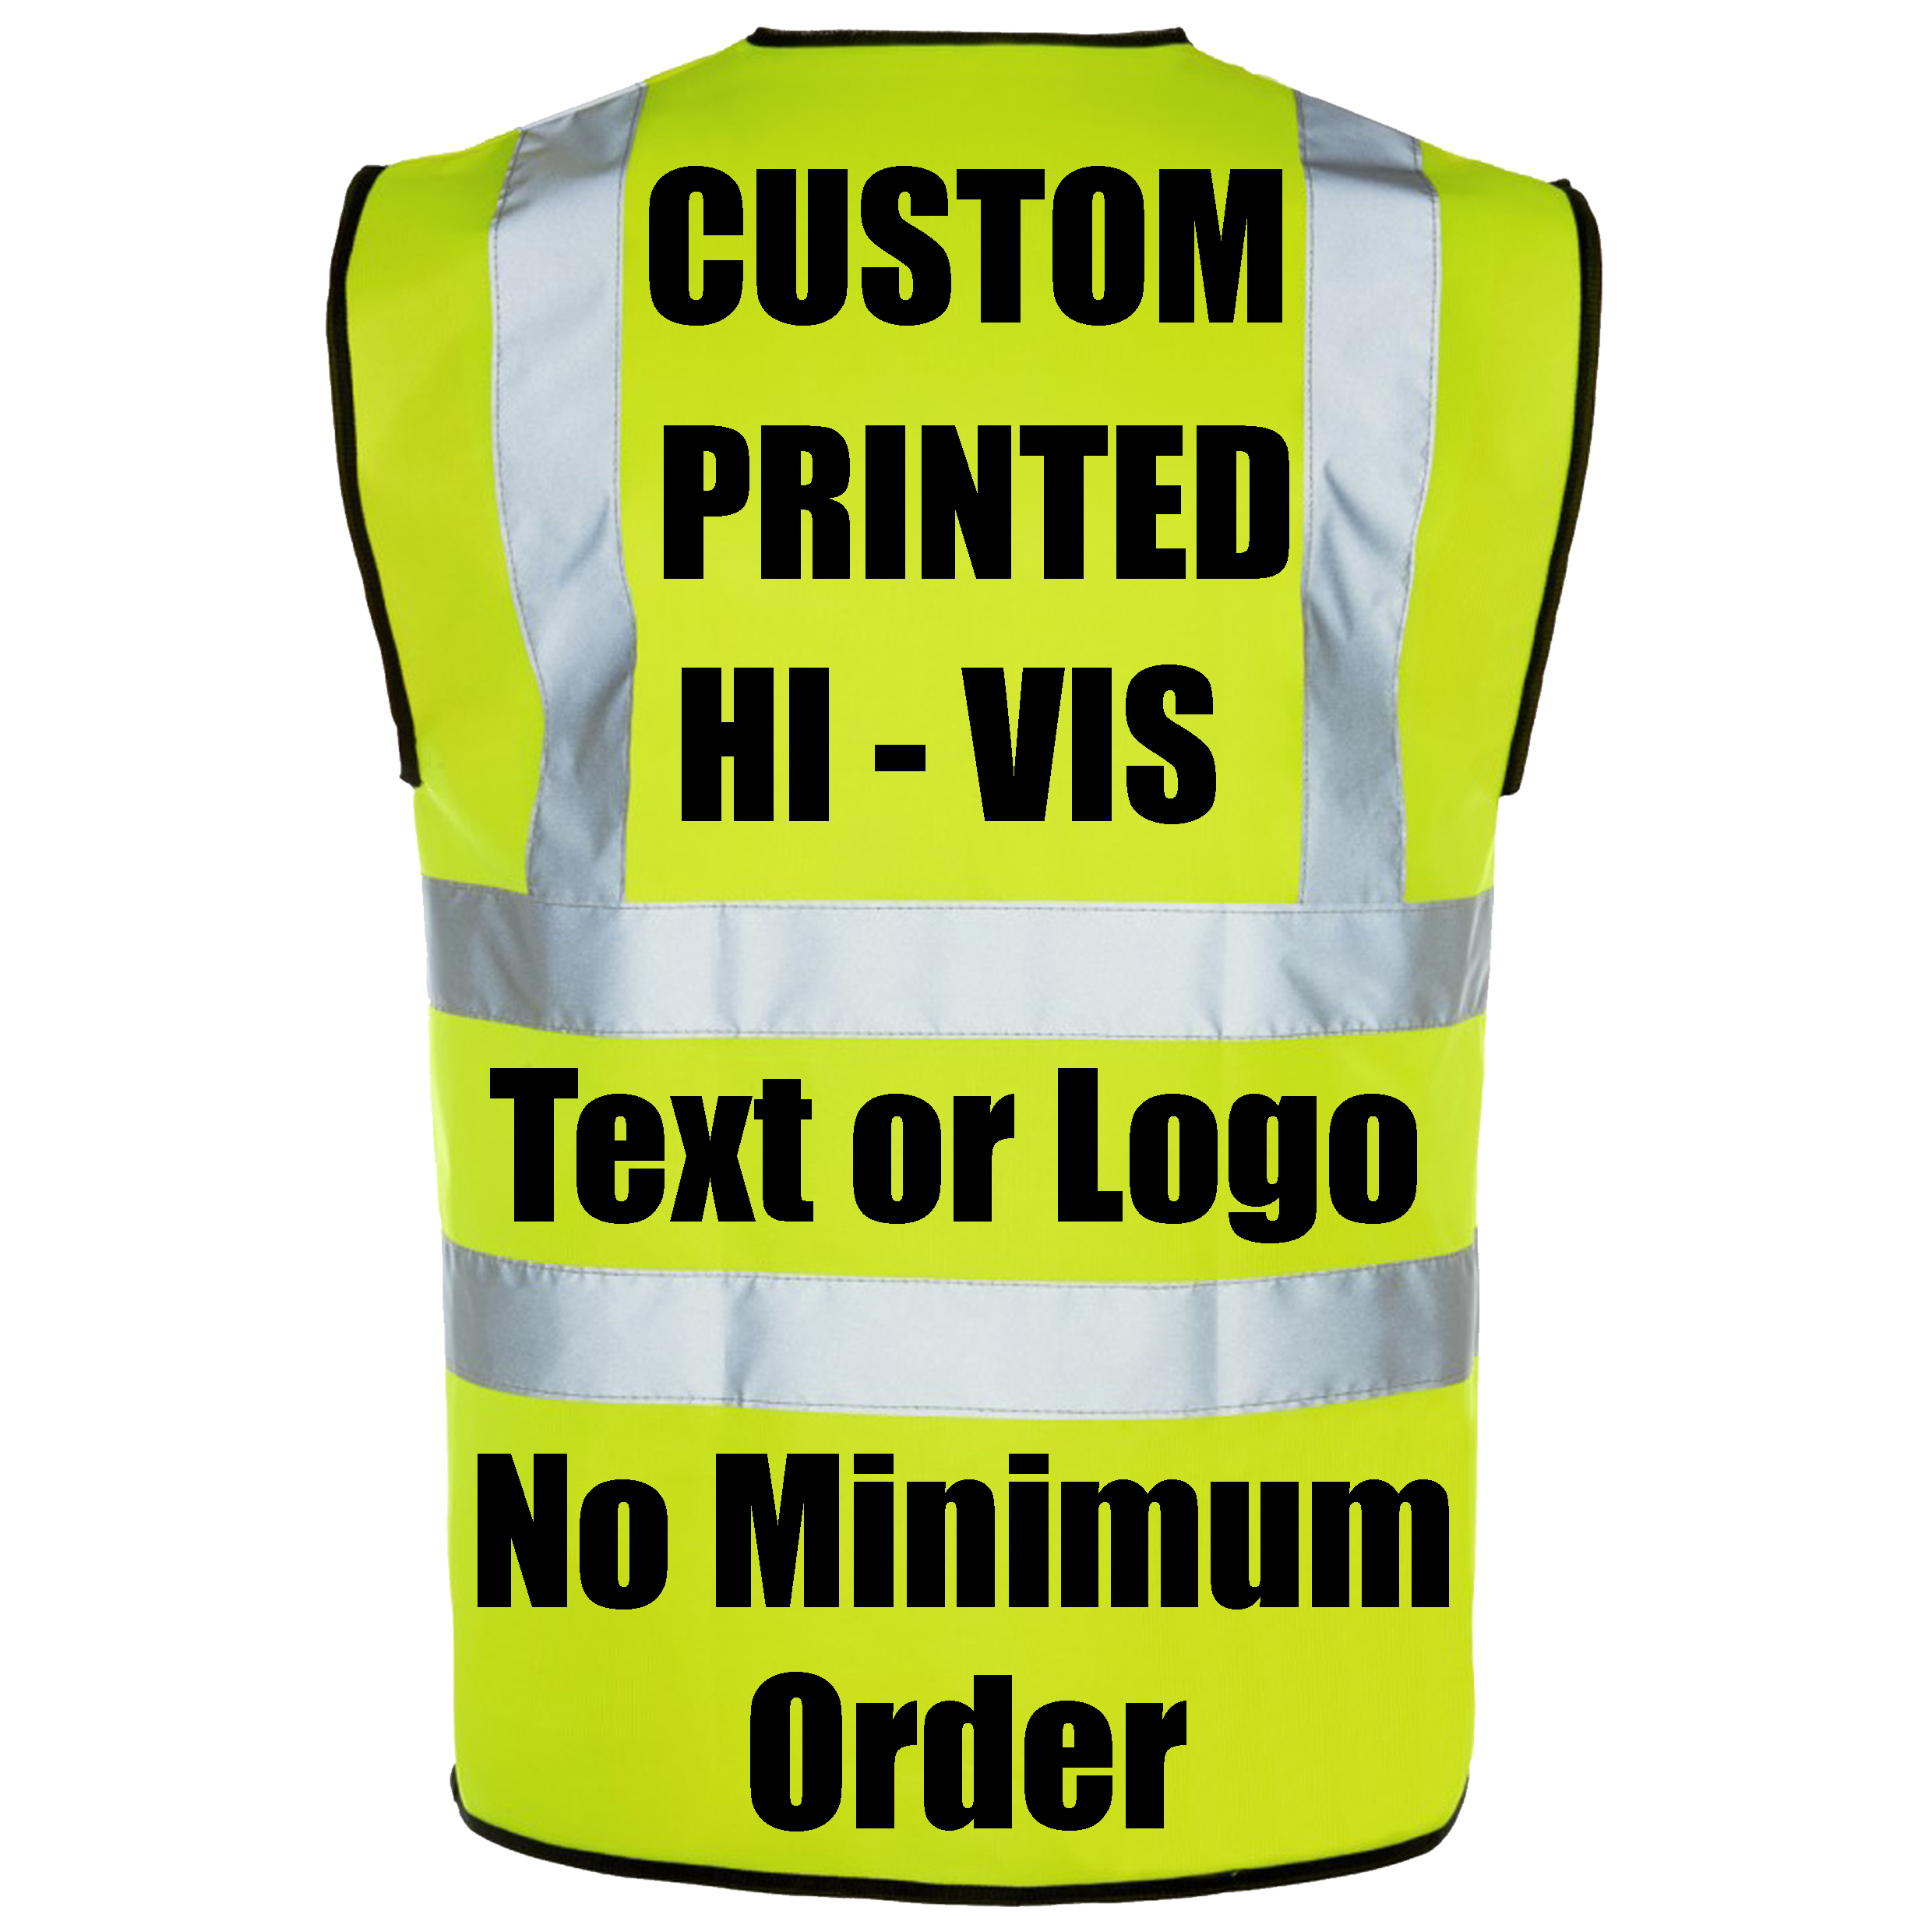 Custom printed hi vis vests